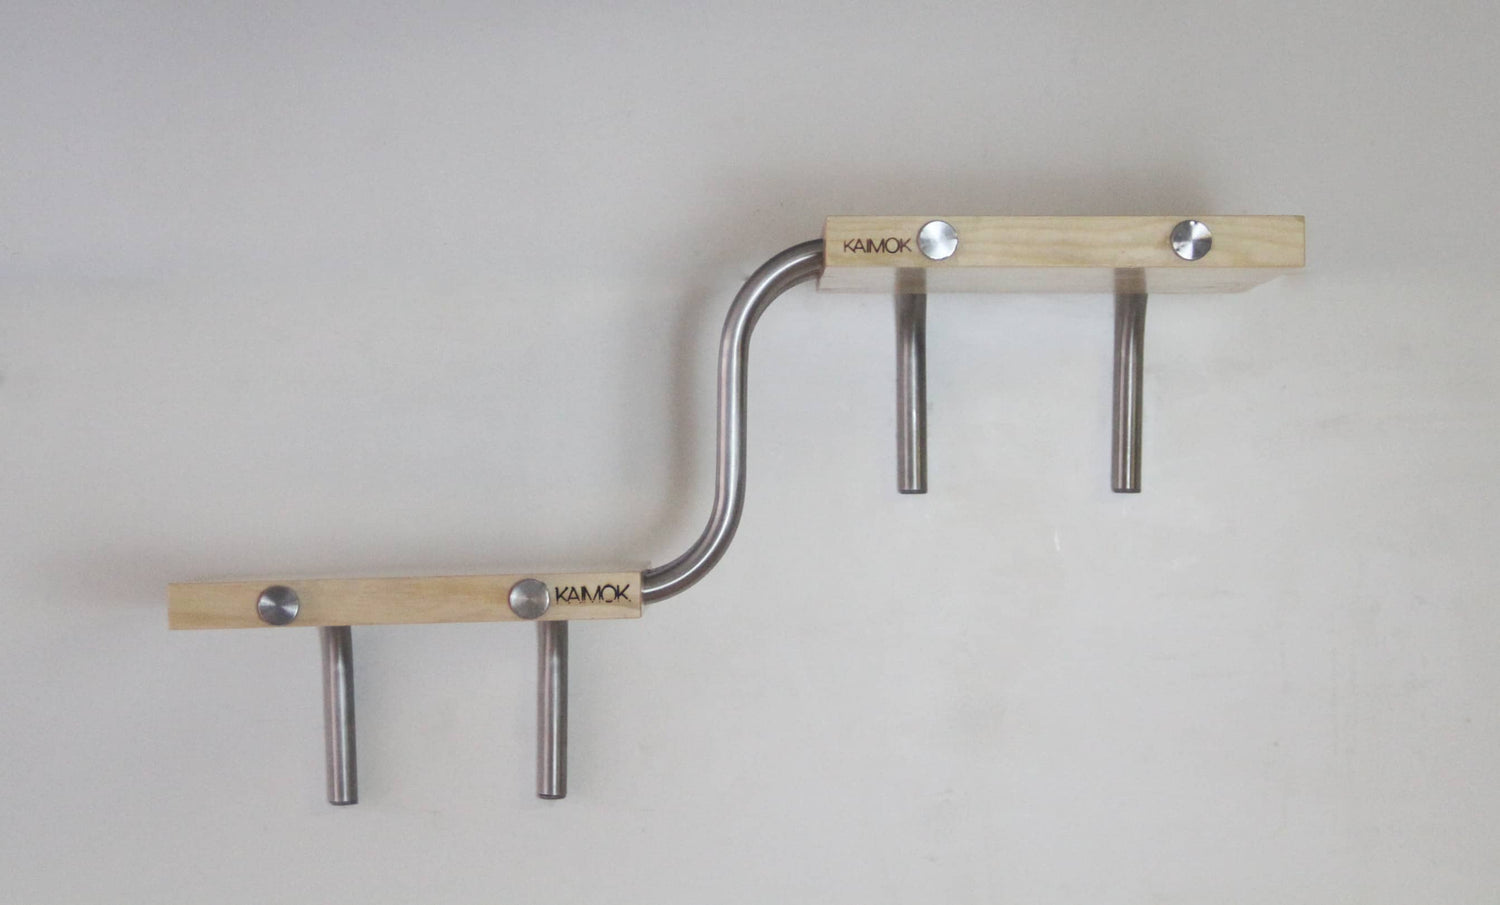 BCN Modular - Pino - soporte de bicicleta - estantes de madera - Kaimok Design